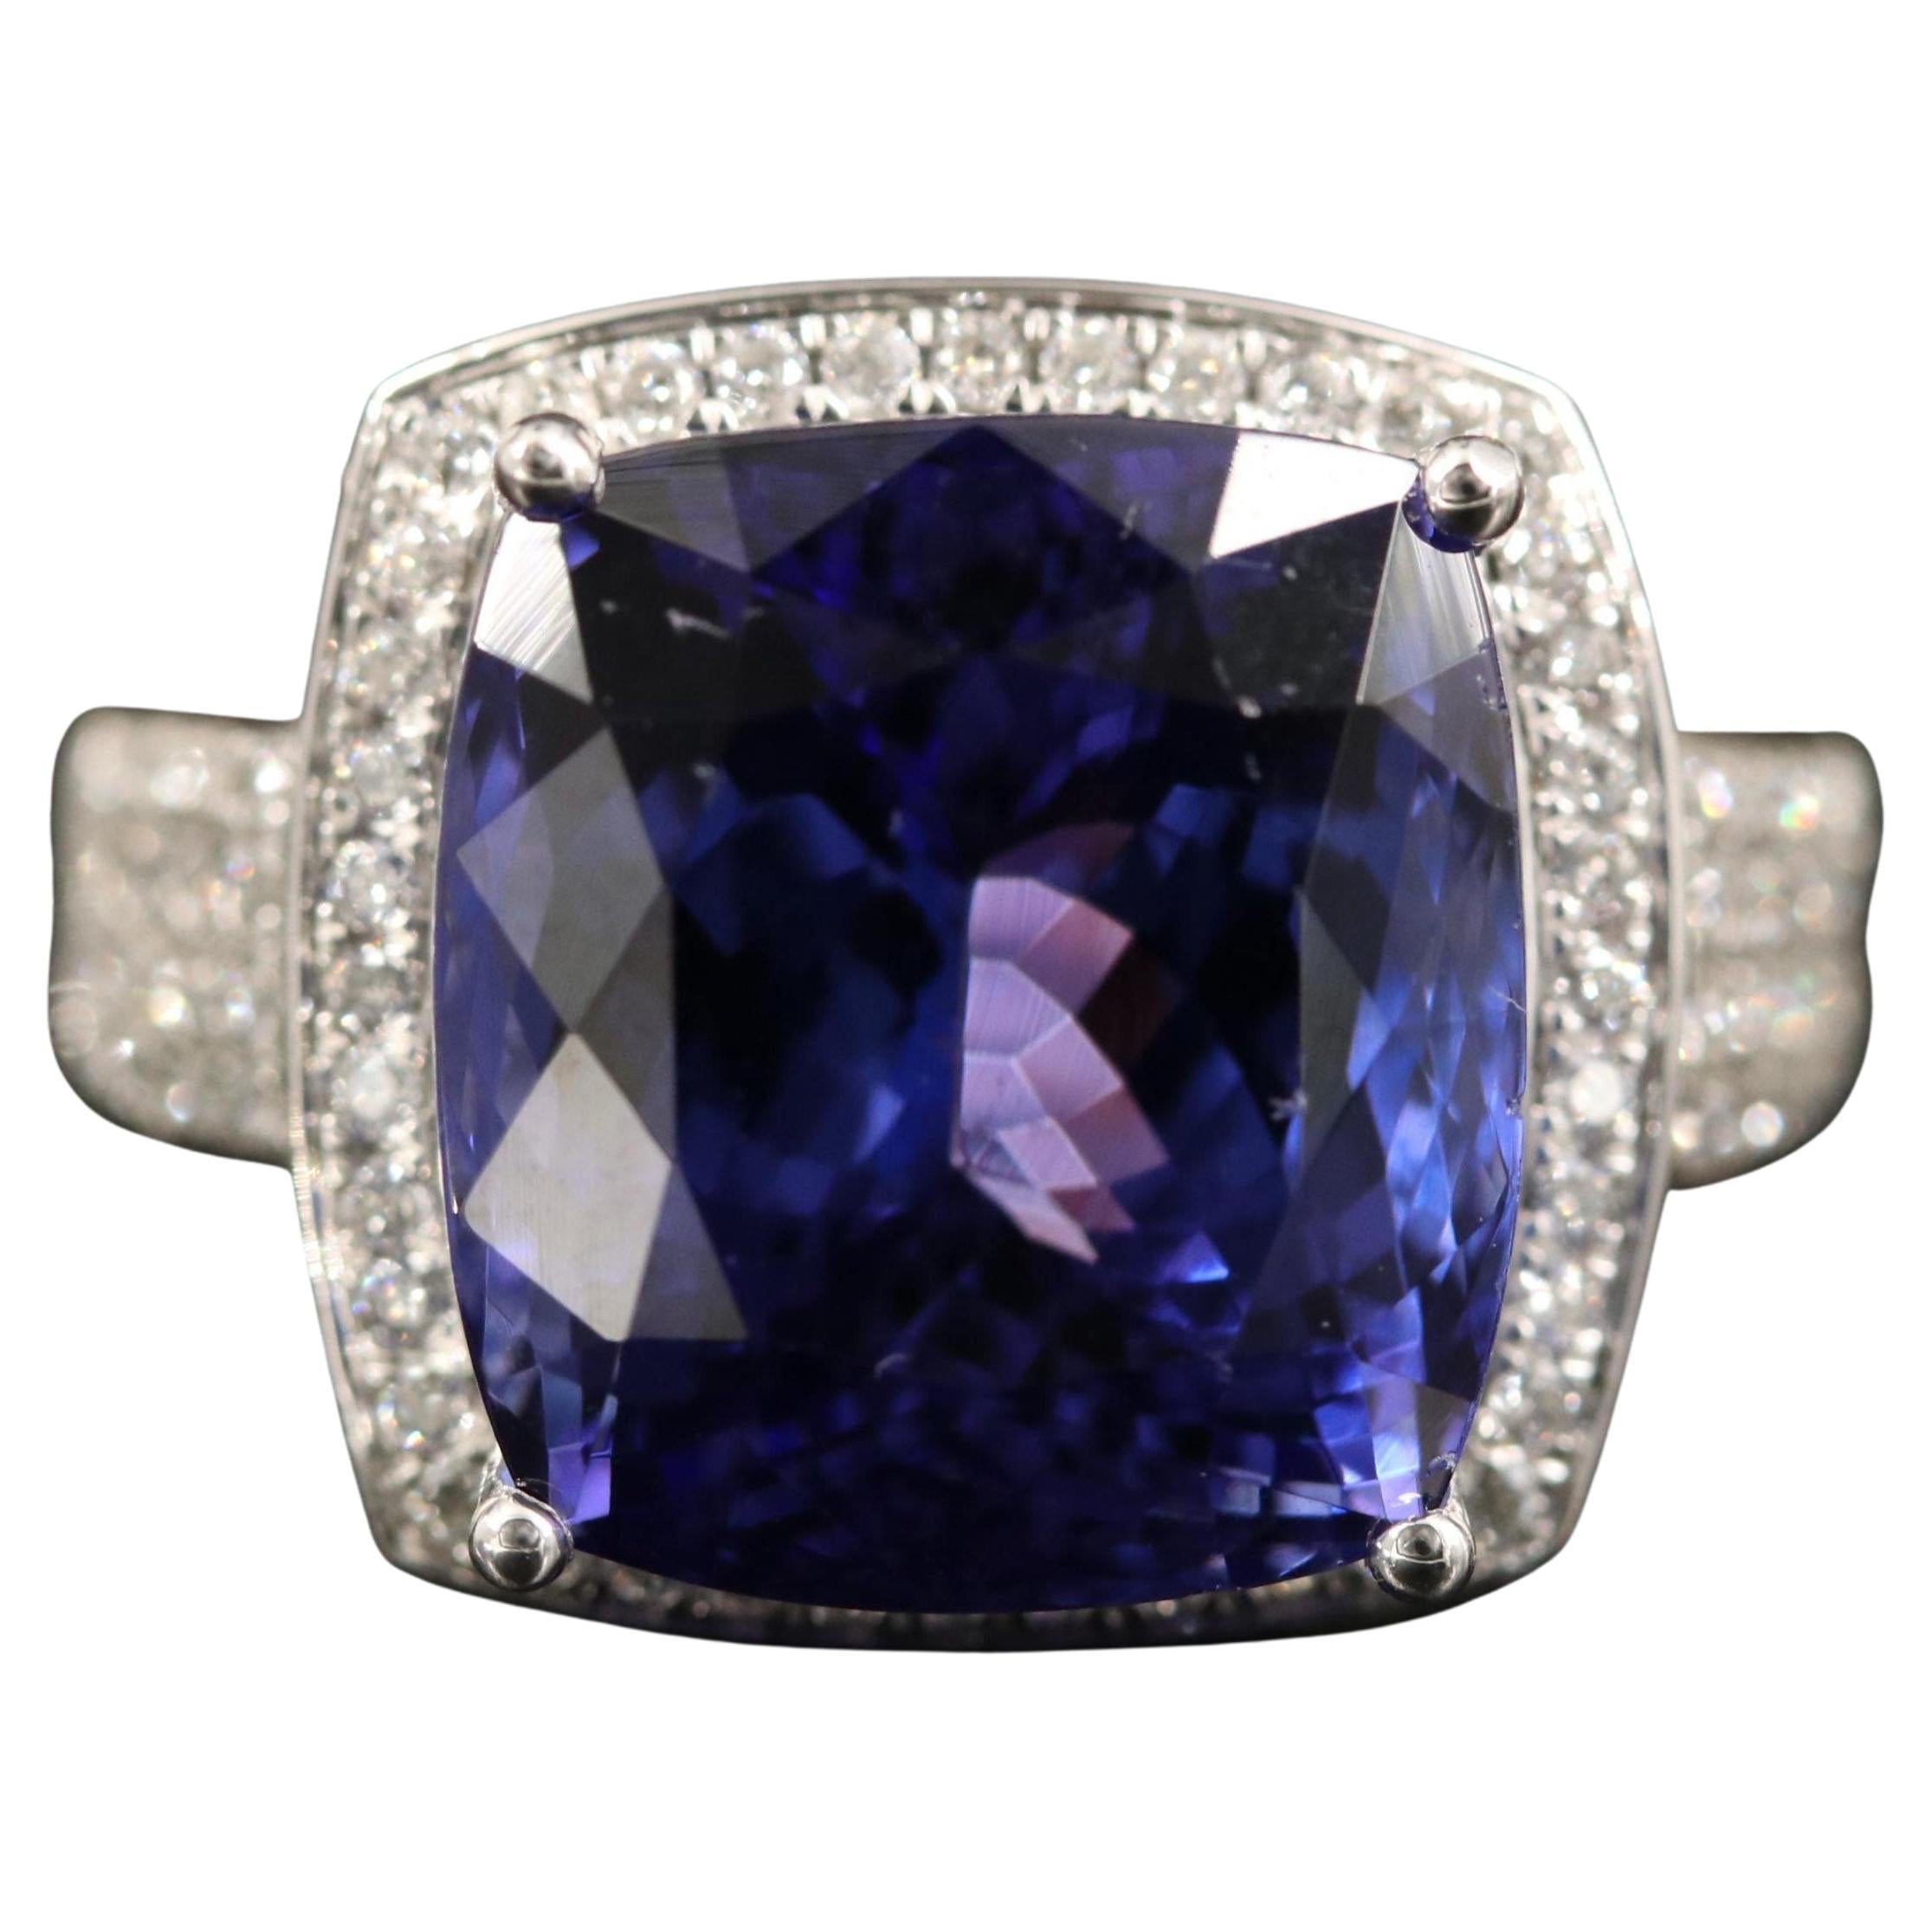 For Sale:  9 Carat Cushion Cut Tanzanite Diamond Engagement Ring, Tanzanite Cocktail Ring